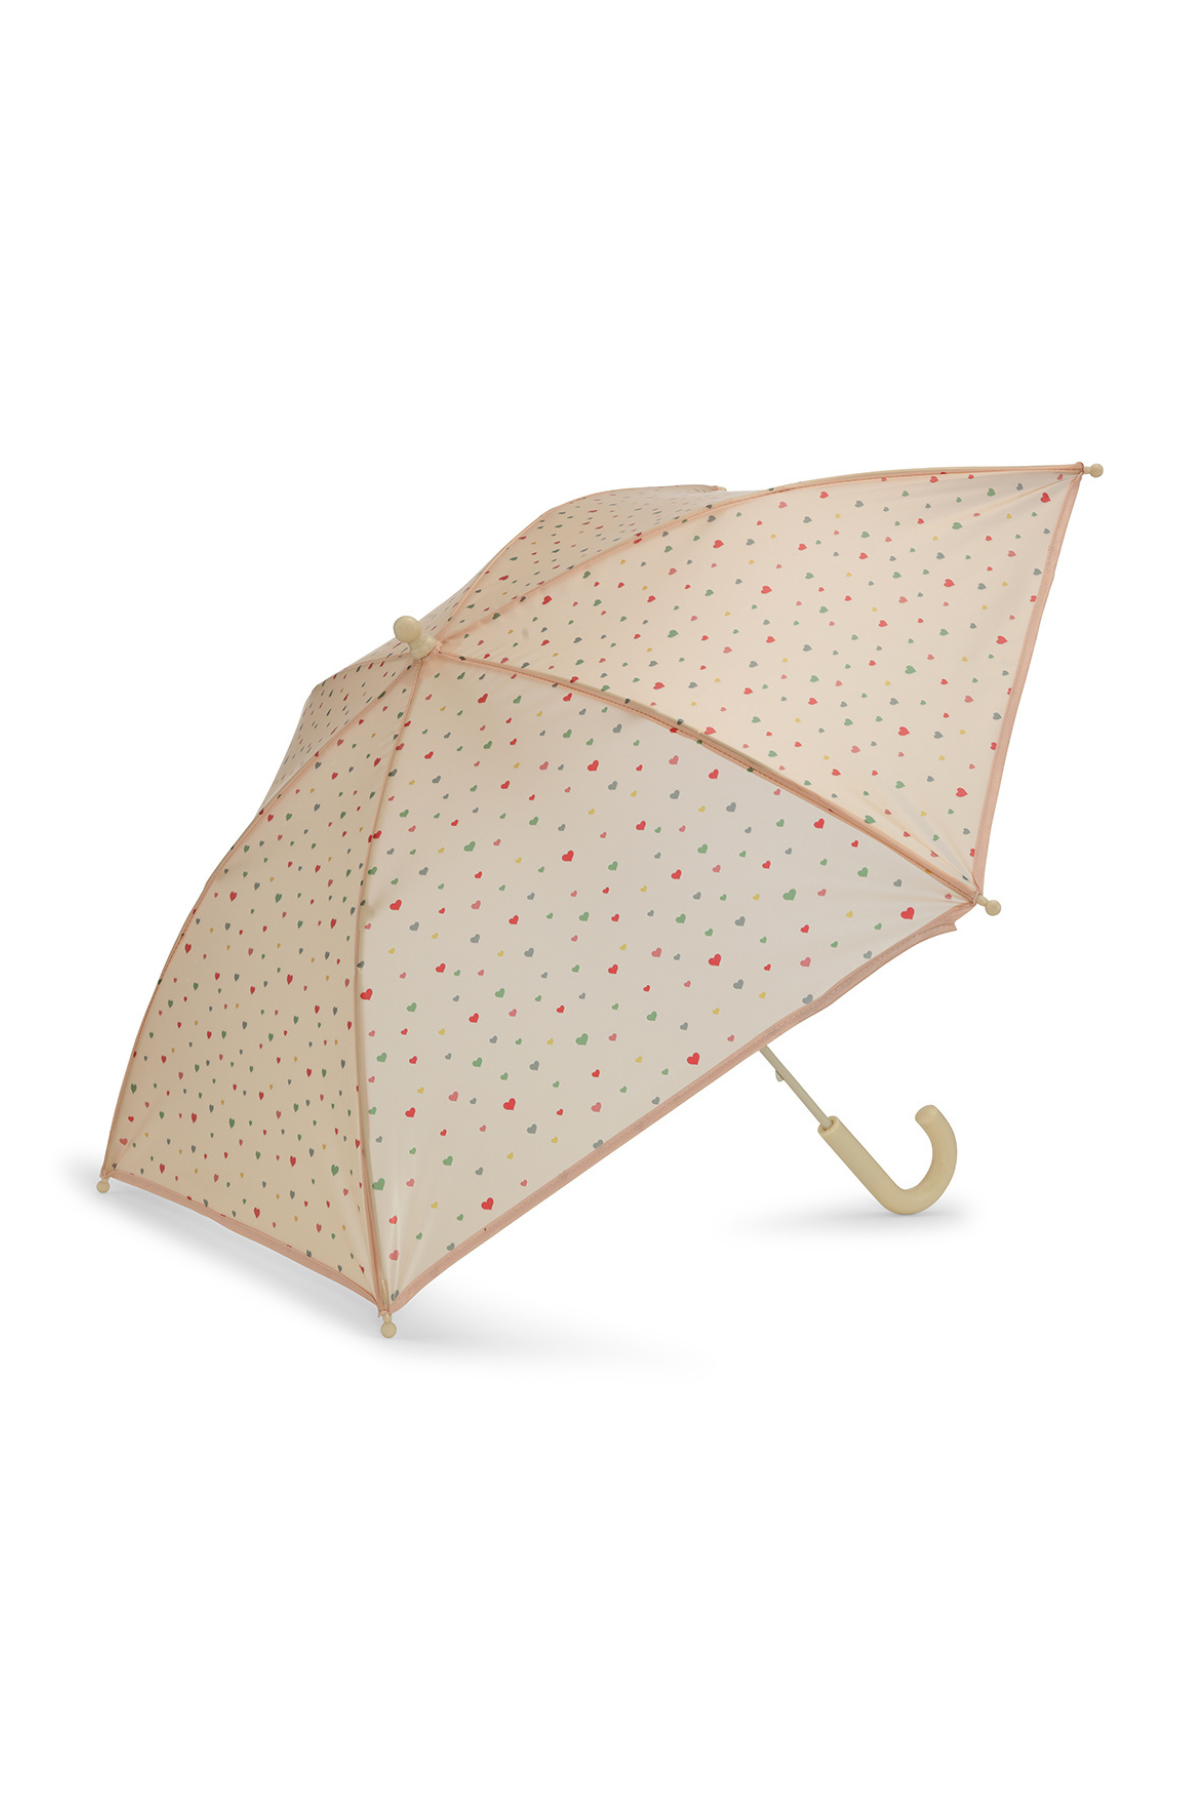 Regenschirm "Bunte Herzis"